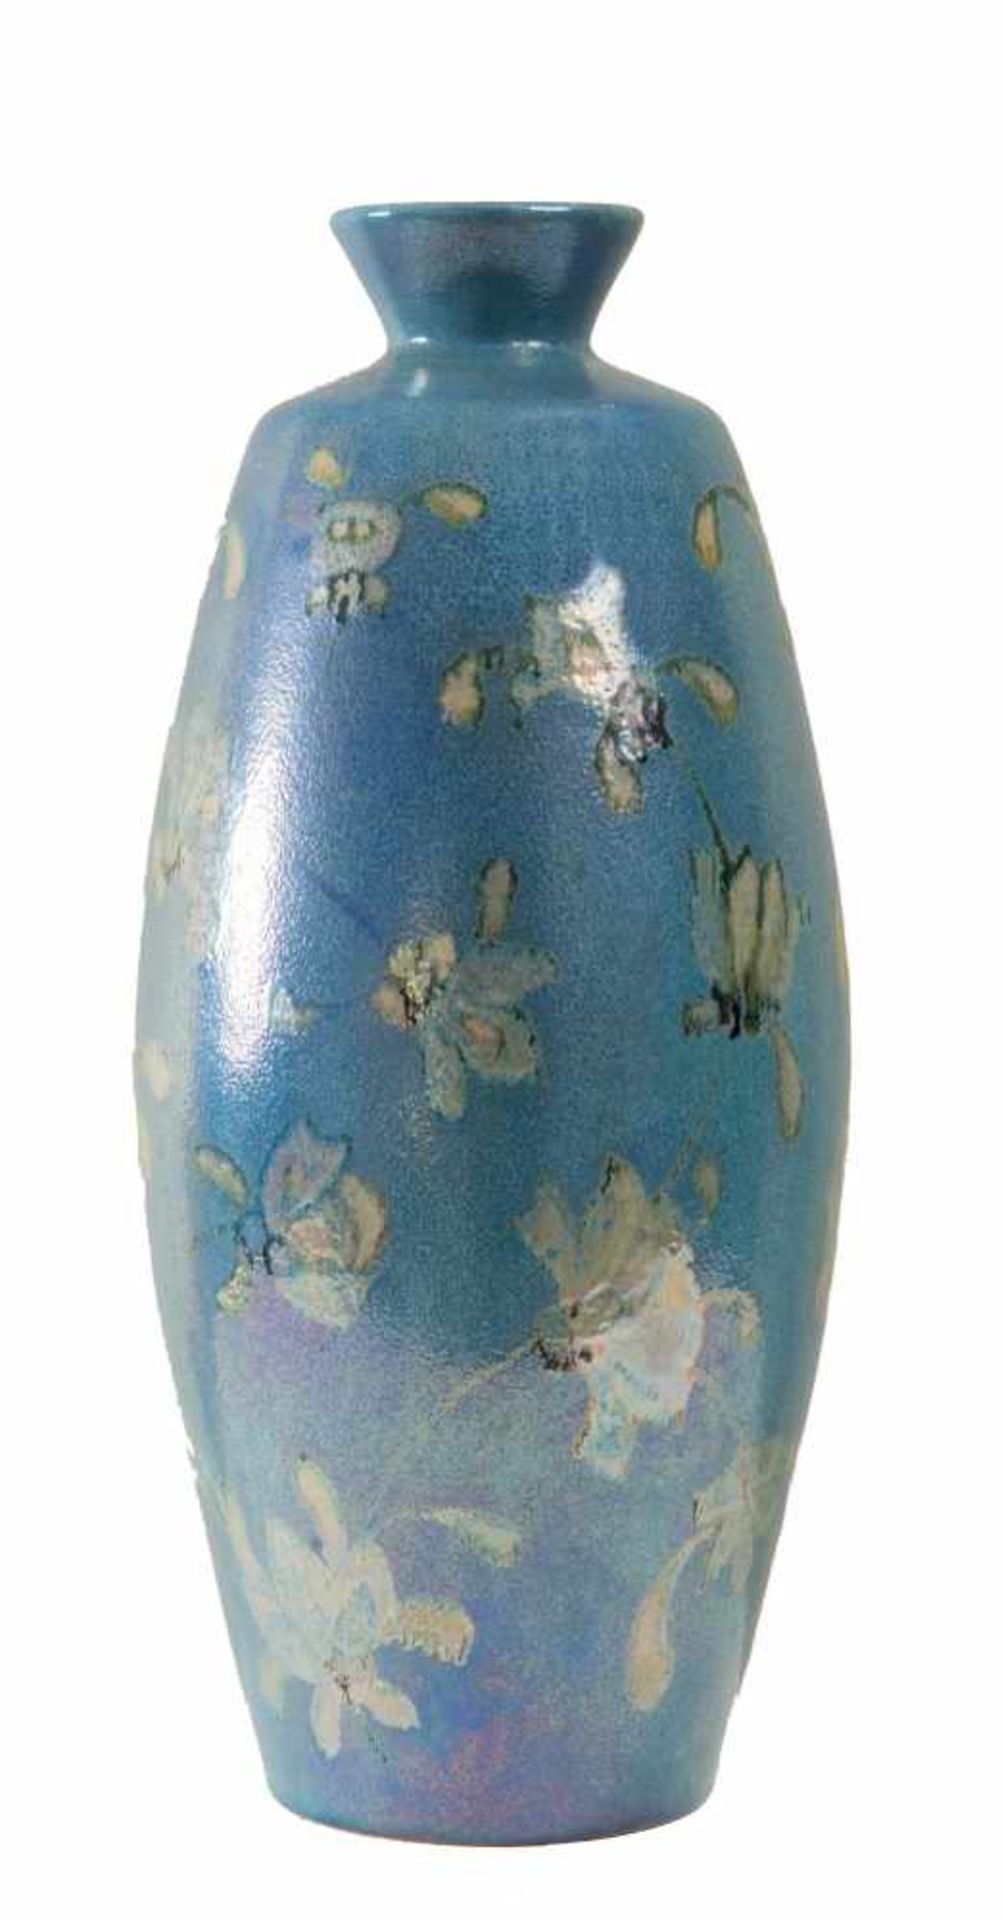 GIORDANO TRONCONI (Faenza, 1932). Vaso in maiolica a lustro, decorazione di ramage fogliacei su